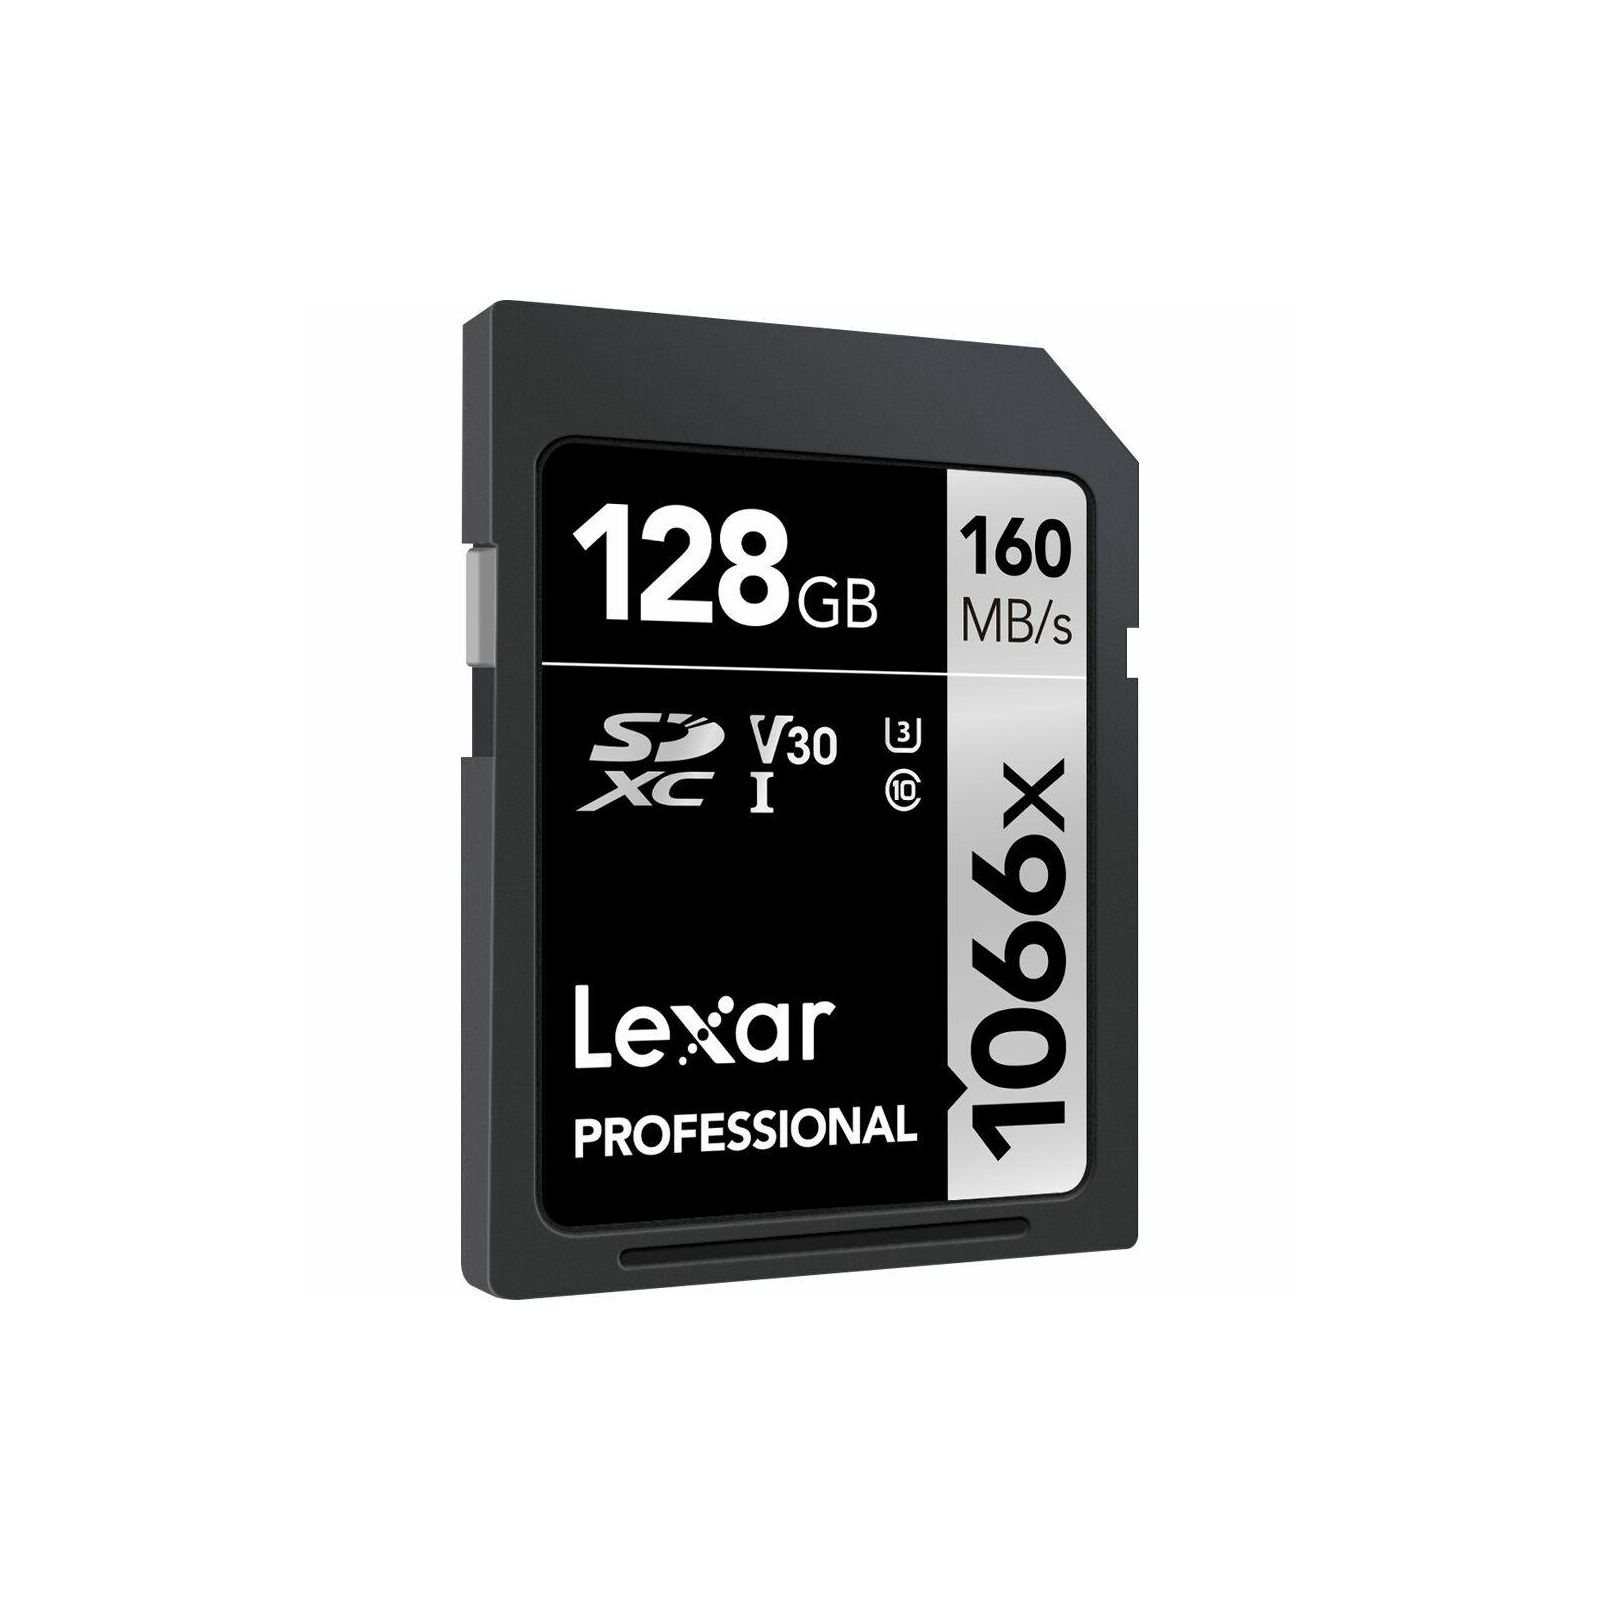 Lexar SDXC 128GB 1066x 160MB/s 120MB/s UHS-I C10 V30 U3 memorijska kartica (LSD1066128G-BNNNG)